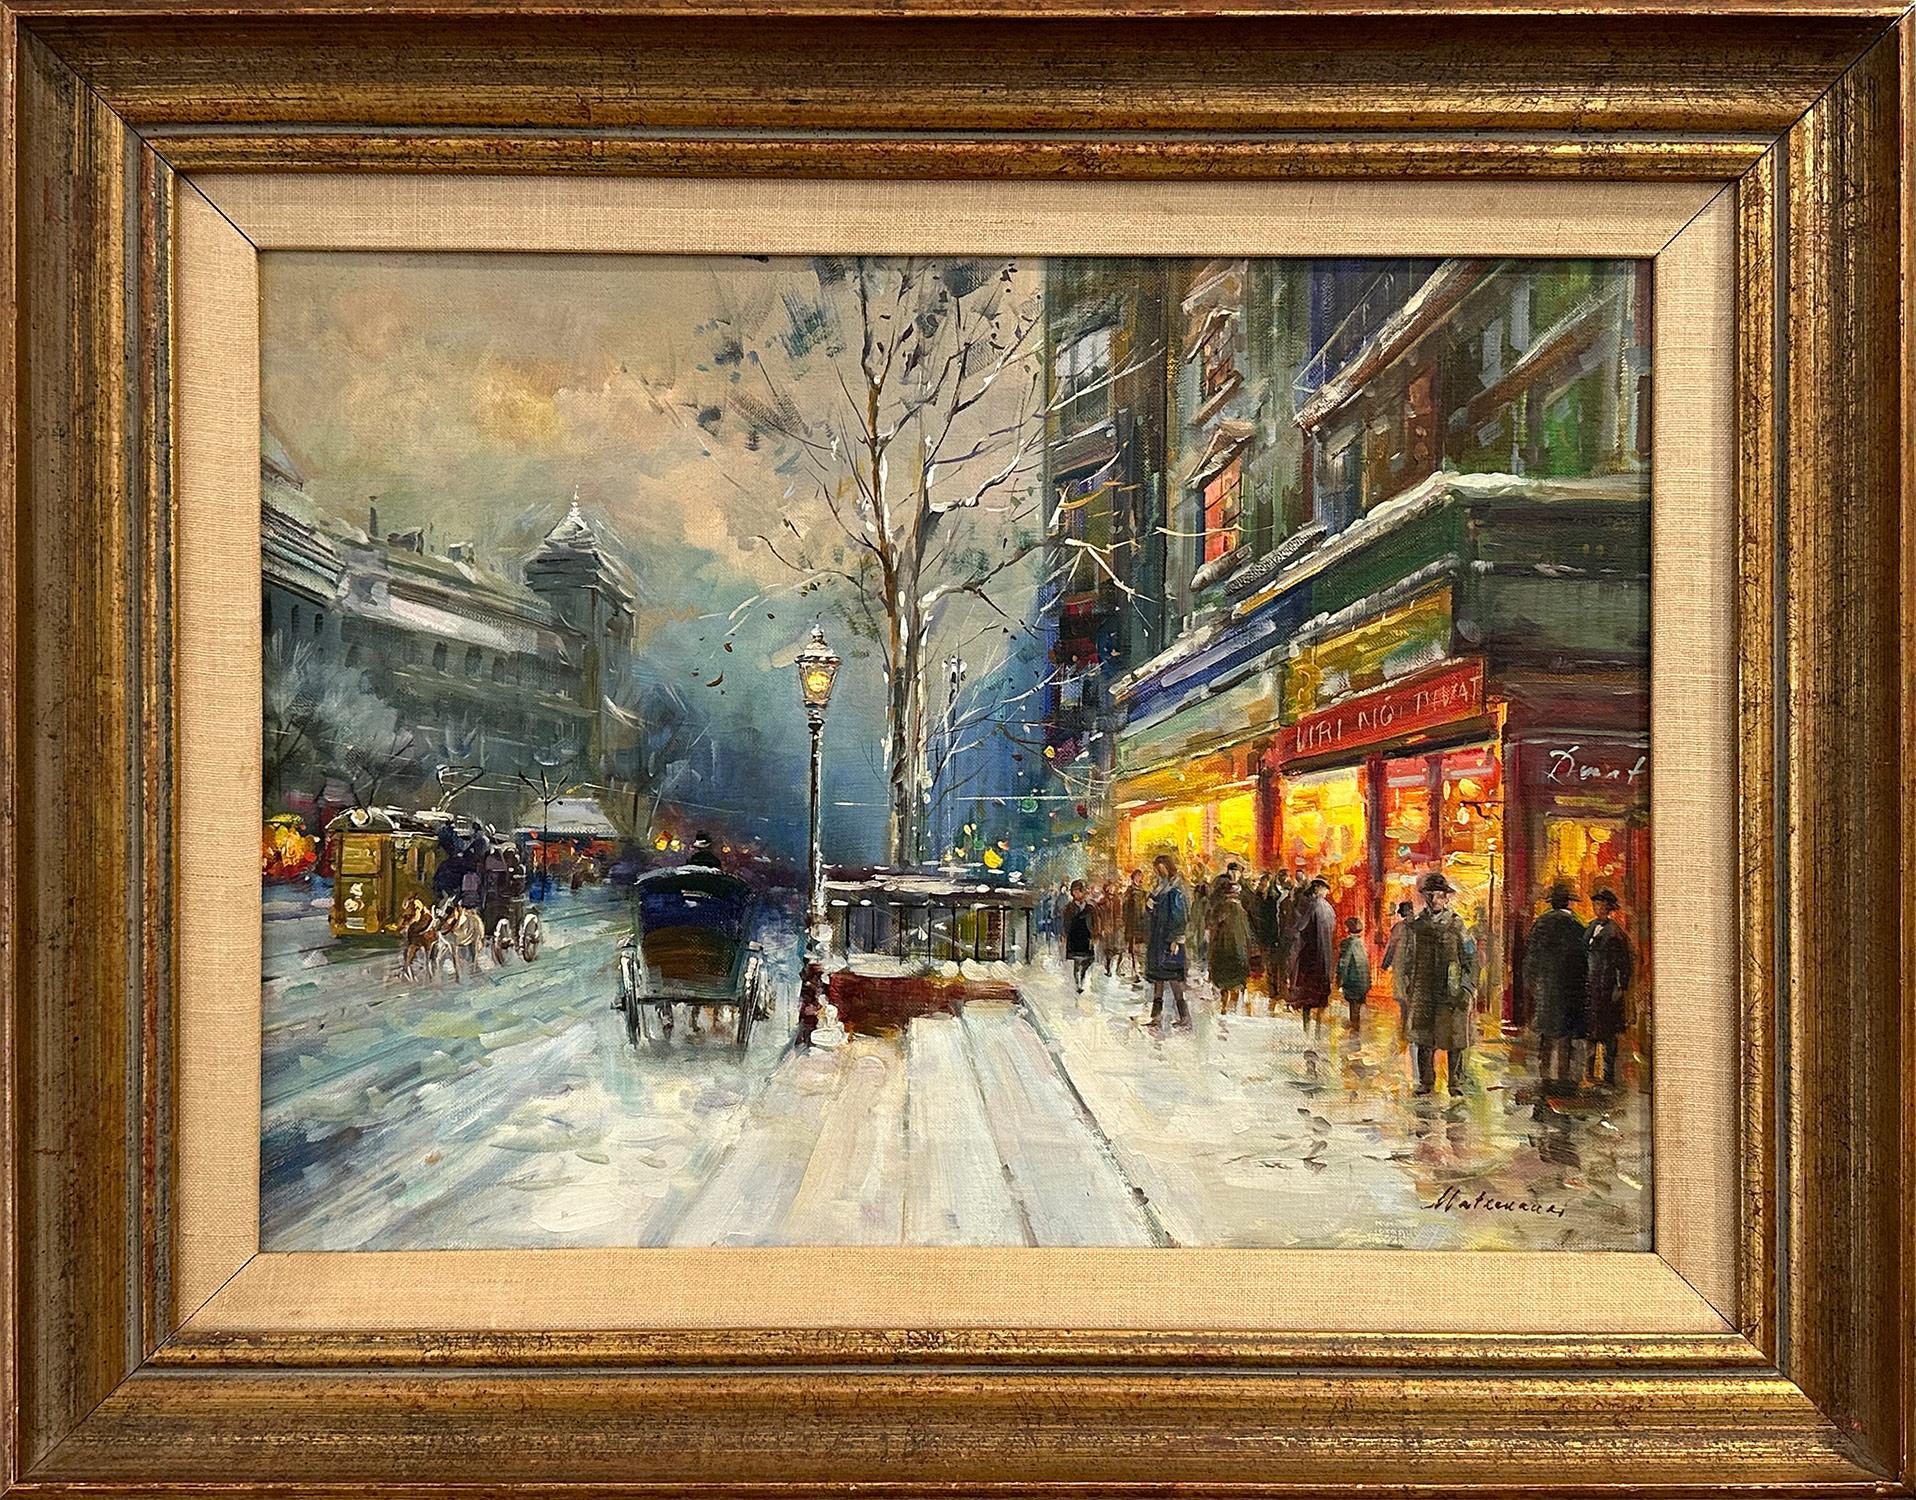 Figurative Painting Hugo Matzenauer - « Budapest in Snow », peinture à l'huile impressionniste hongroise du 20e siècle sur toile